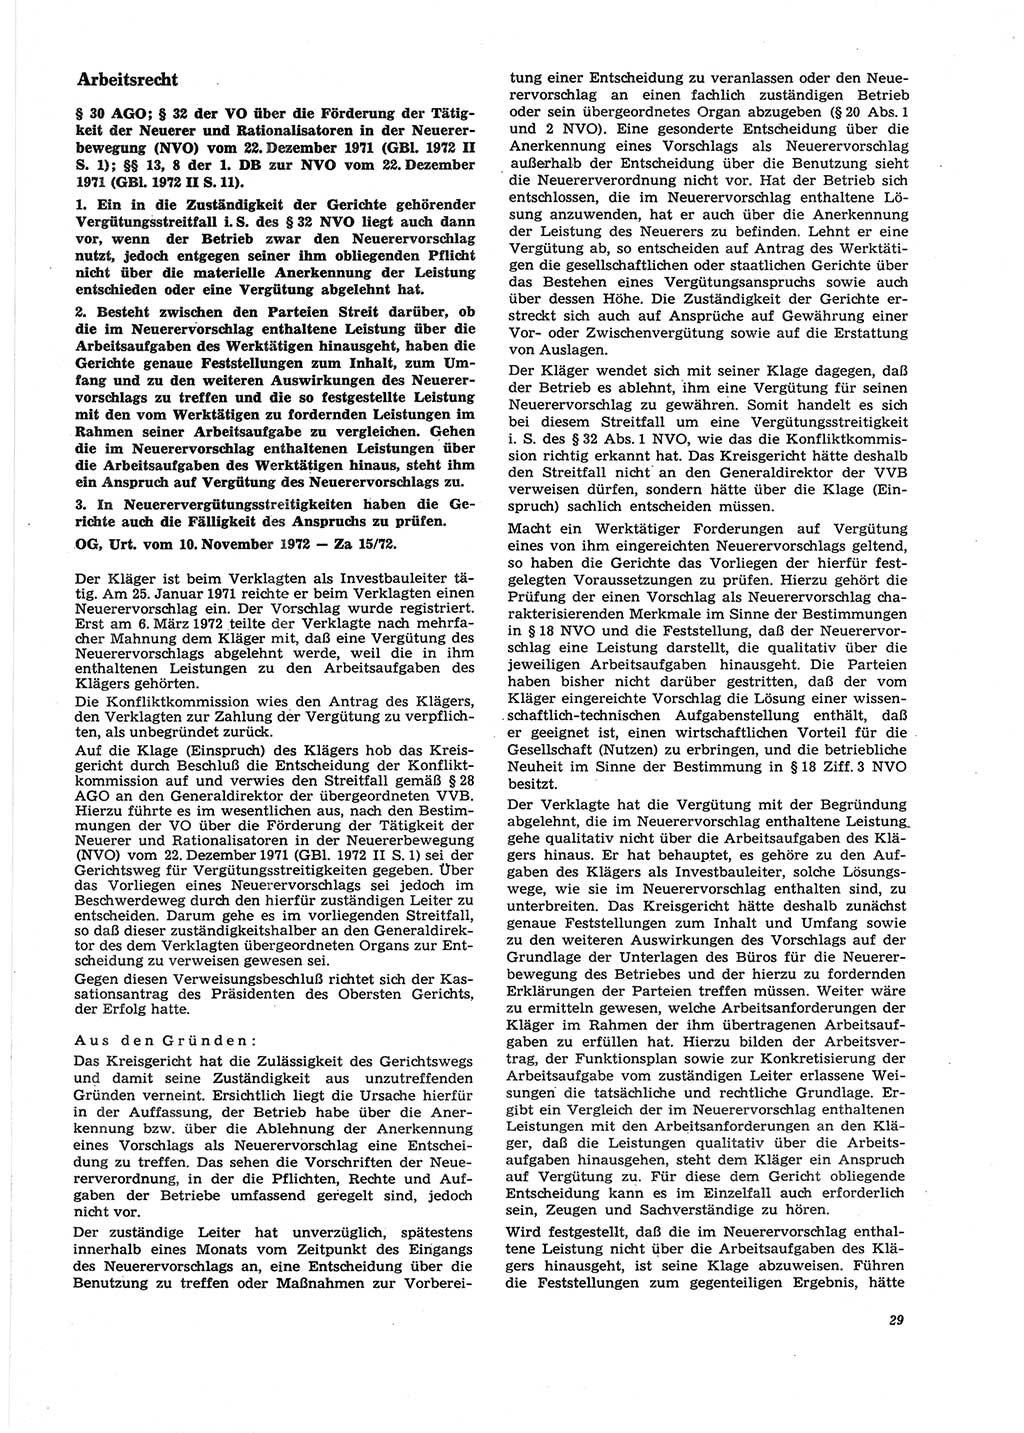 Neue Justiz (NJ), Zeitschrift für Recht und Rechtswissenschaft [Deutsche Demokratische Republik (DDR)], 27. Jahrgang 1973, Seite 29 (NJ DDR 1973, S. 29)